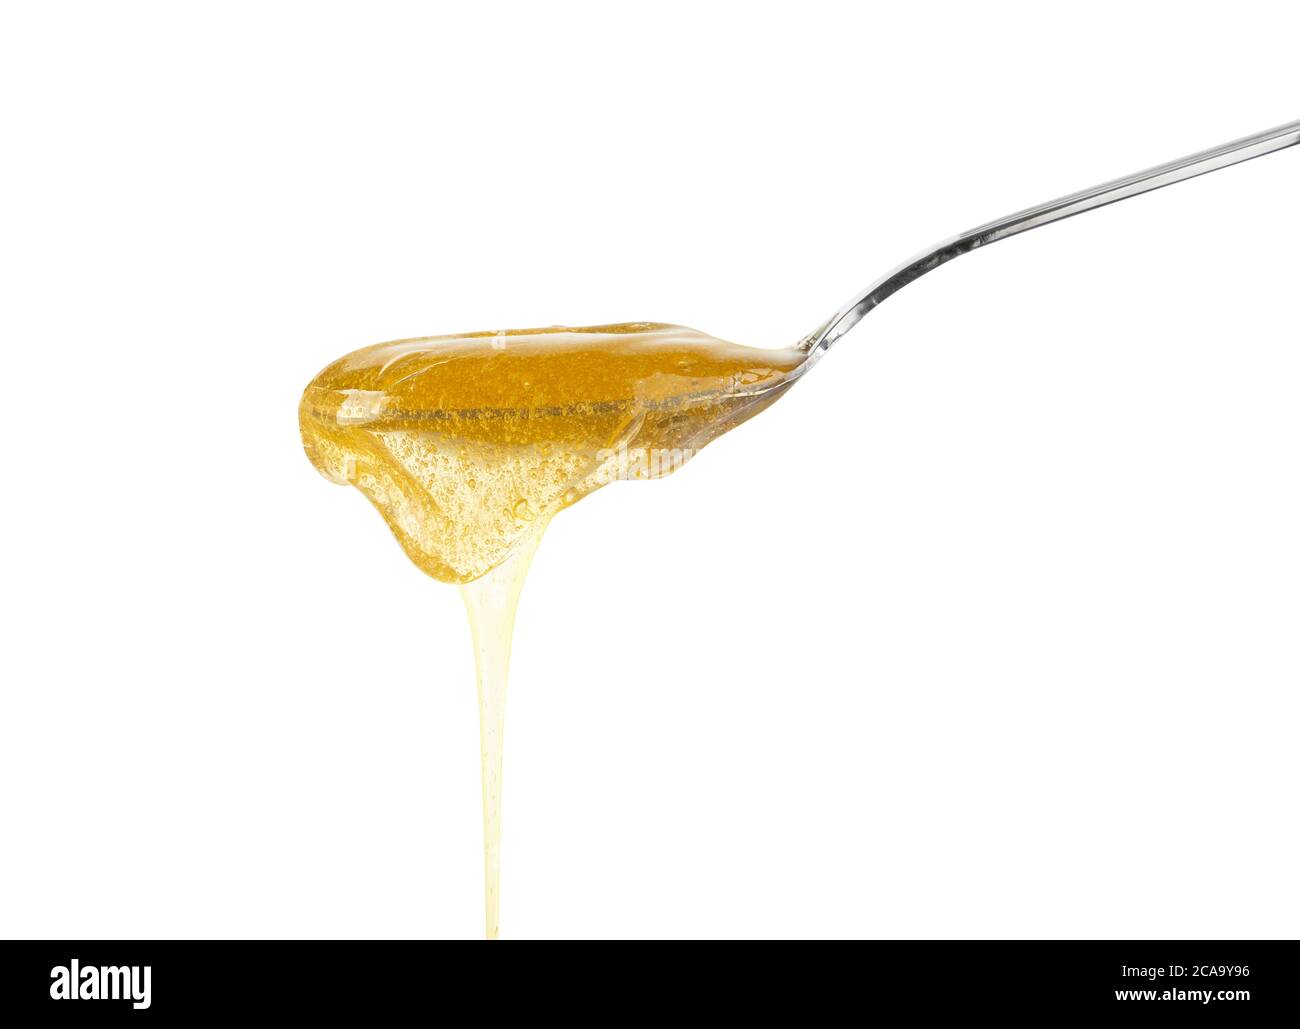 Primo piano di miele di acacia fresco spesso fluido versando e fluendo da cucchiaio di metallo isolato su sfondo bianco con spazio di copia, vista laterale ad angolo basso Foto Stock